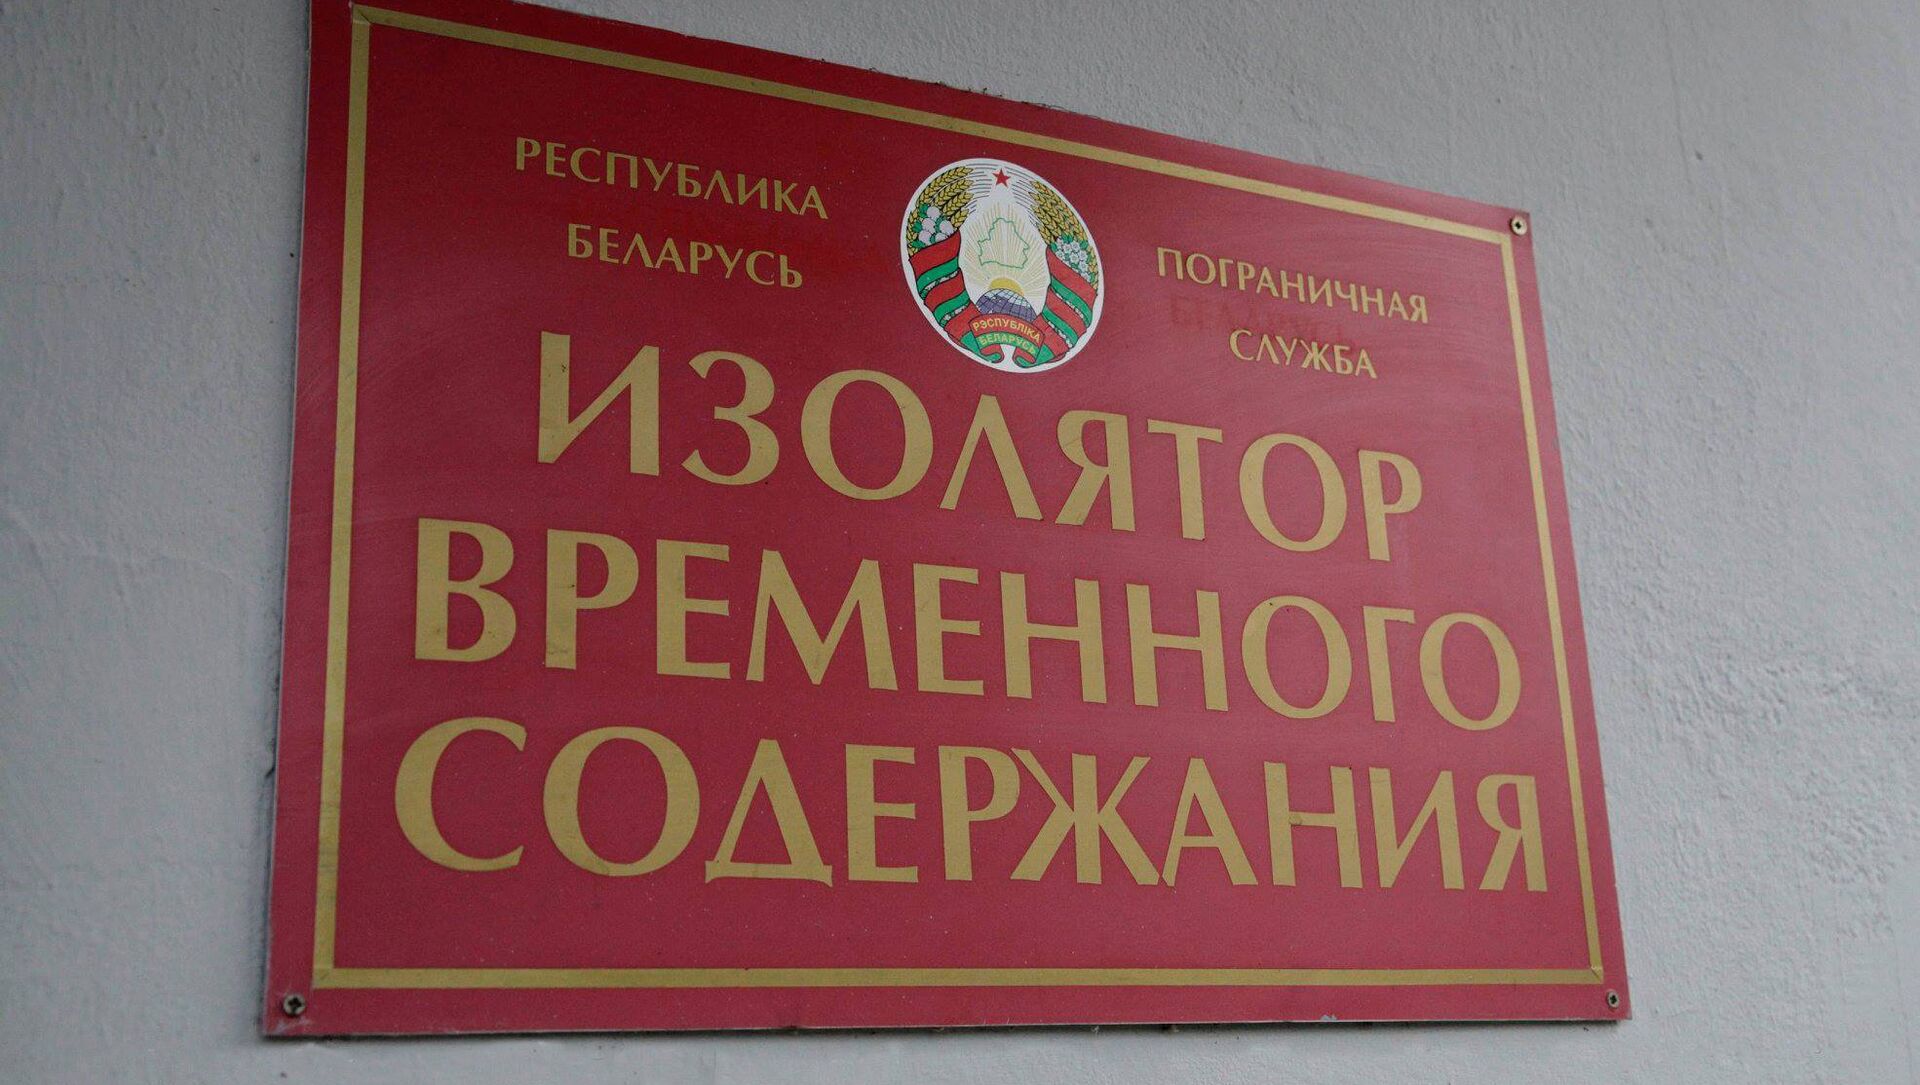 ИВС пограничной группы - Sputnik Беларусь, 1920, 01.04.2021